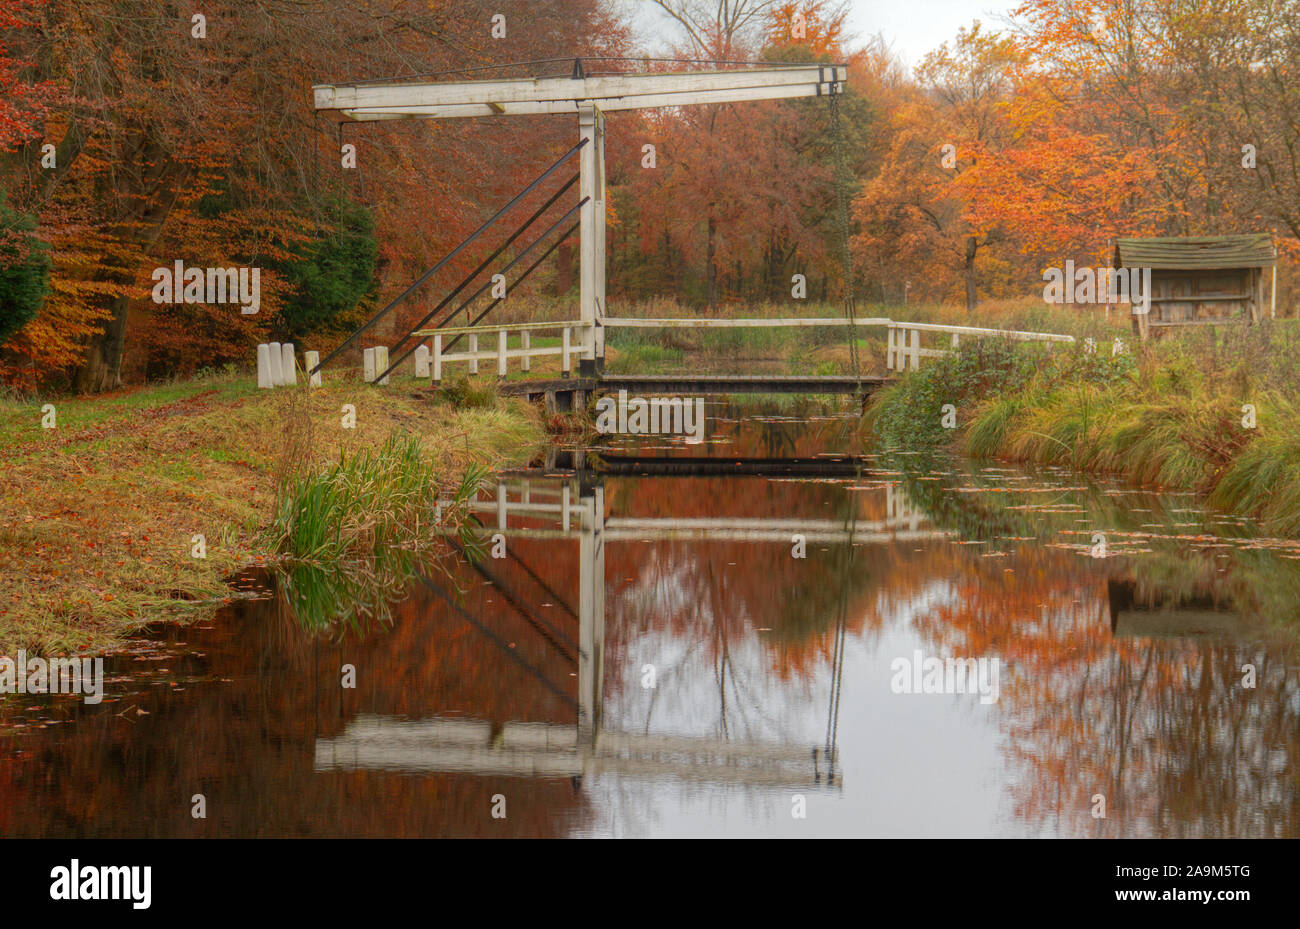 Pequeño puente levadizo de madera sobre un canal en un paisaje otoñal cerca de Veenhuizen en los Países Bajos Foto de stock